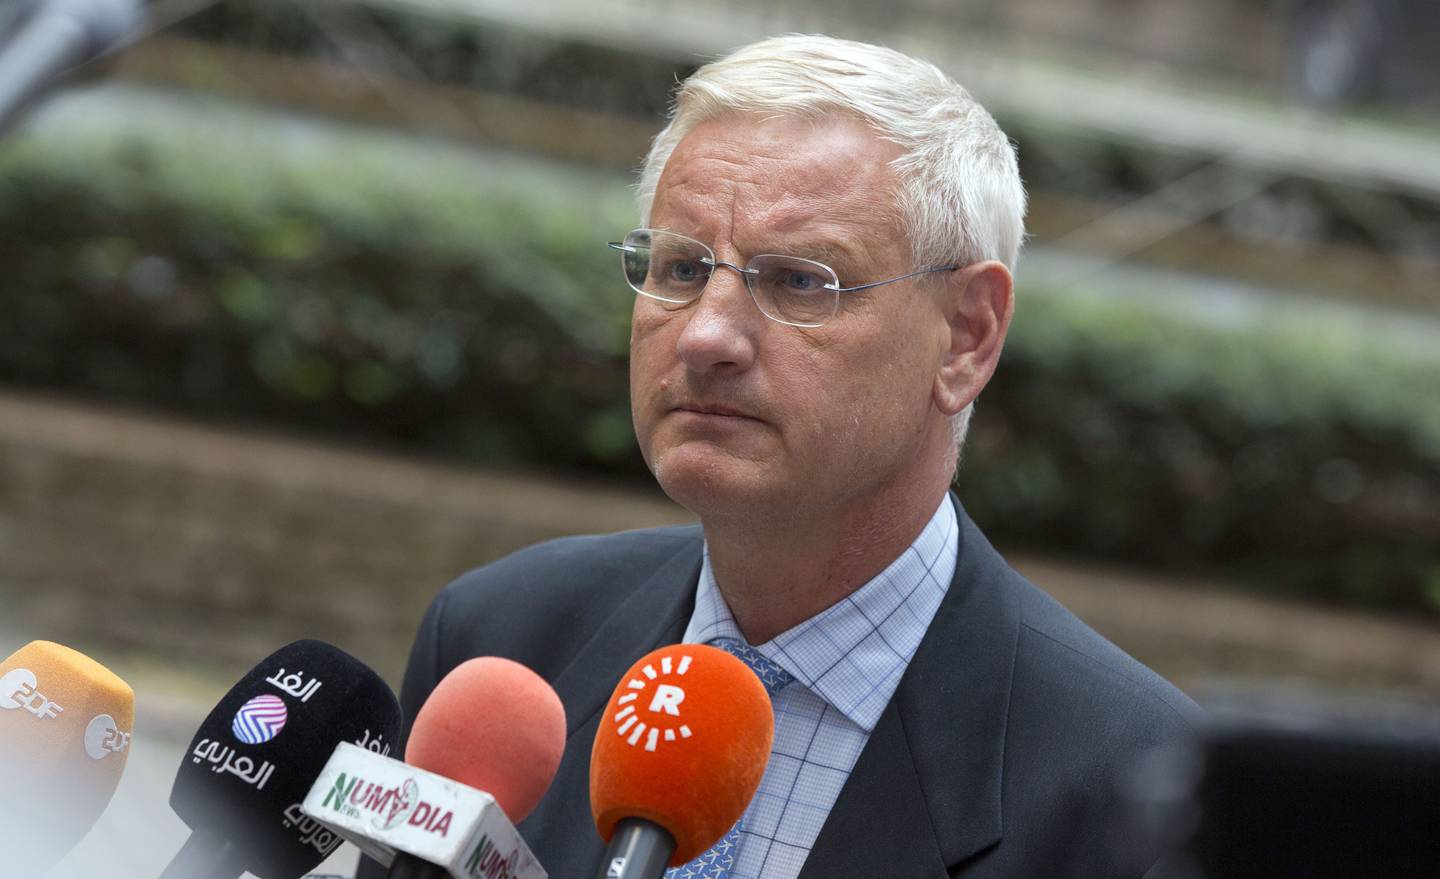 Carl Bildt er medformann i tankesmia European Council on Foreign Relations (ECFR), og følger europeisk politikk og krigen i Ukraina svært tett. Han brukes ofte som ekspert i både svenske og utenlandske medier.